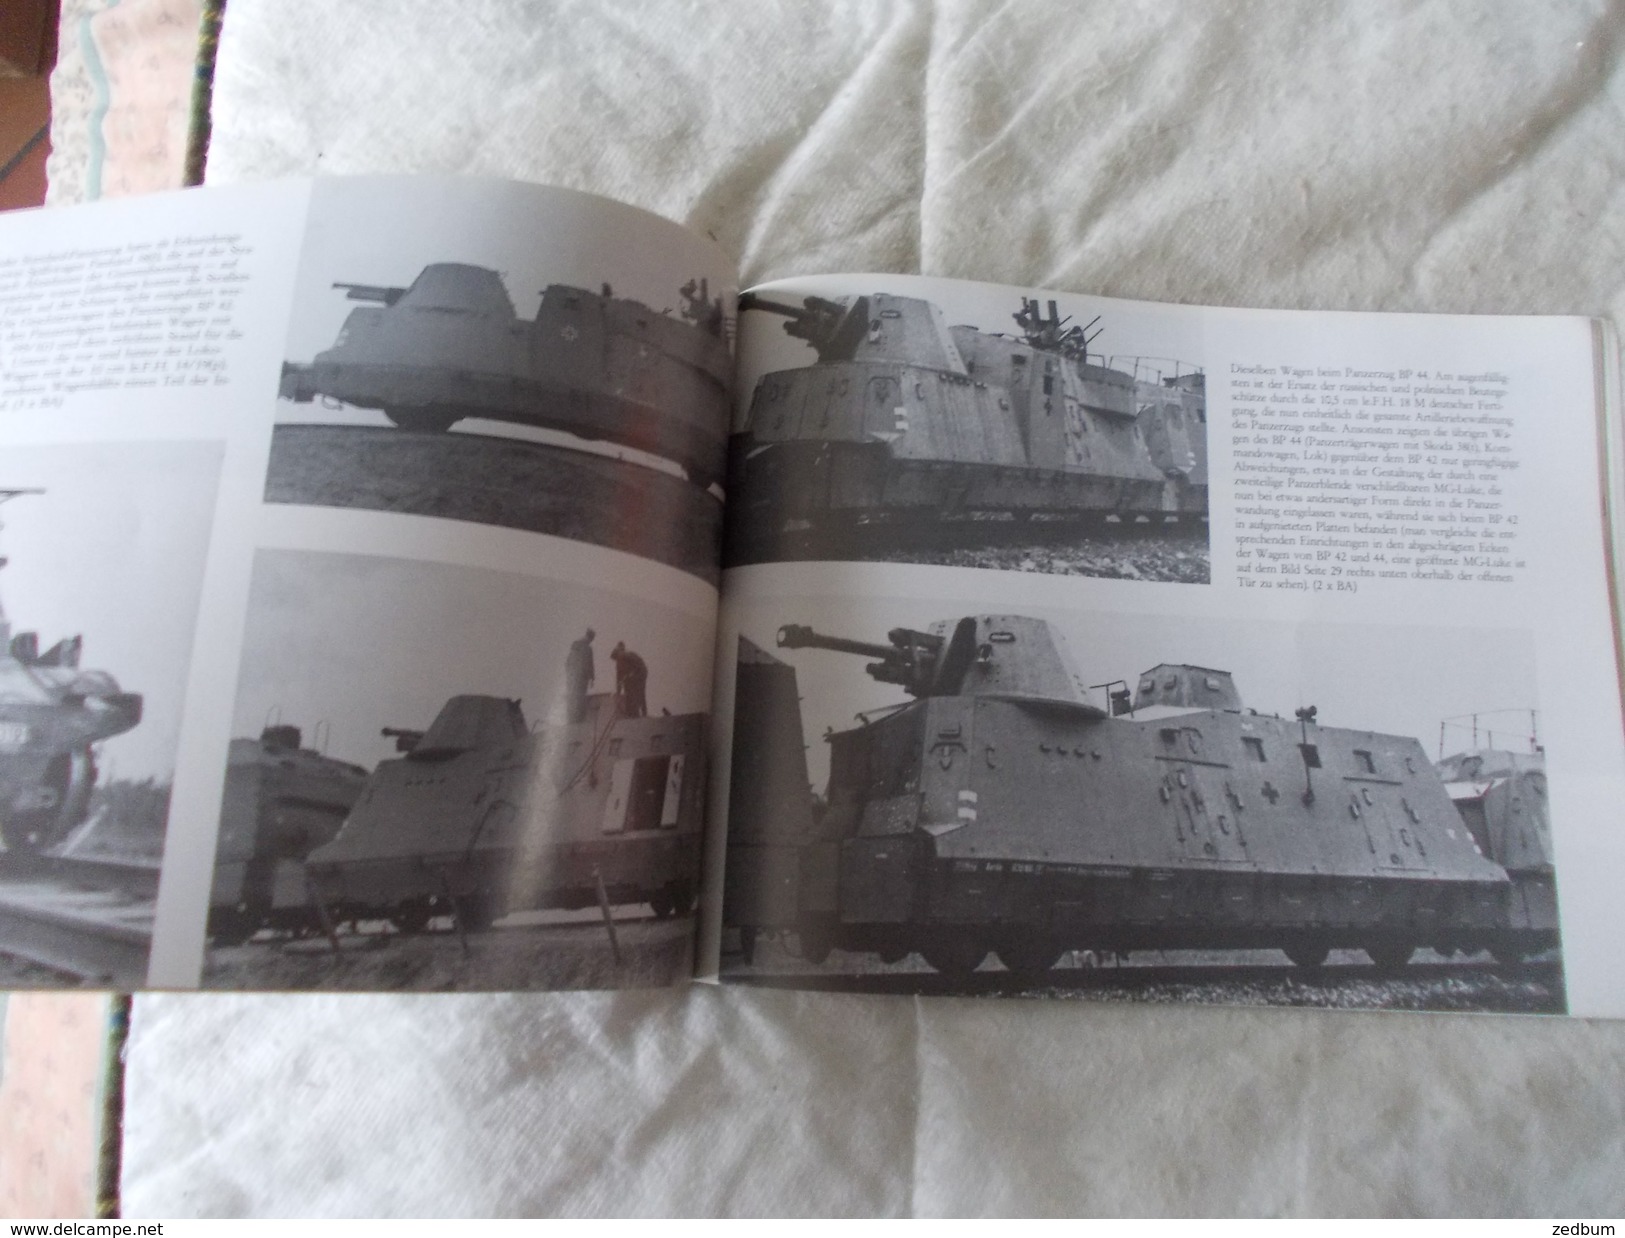 Deutsche Panzerzuge Im Zweiten Weltkrieg  Train De Guerre - Colecciones